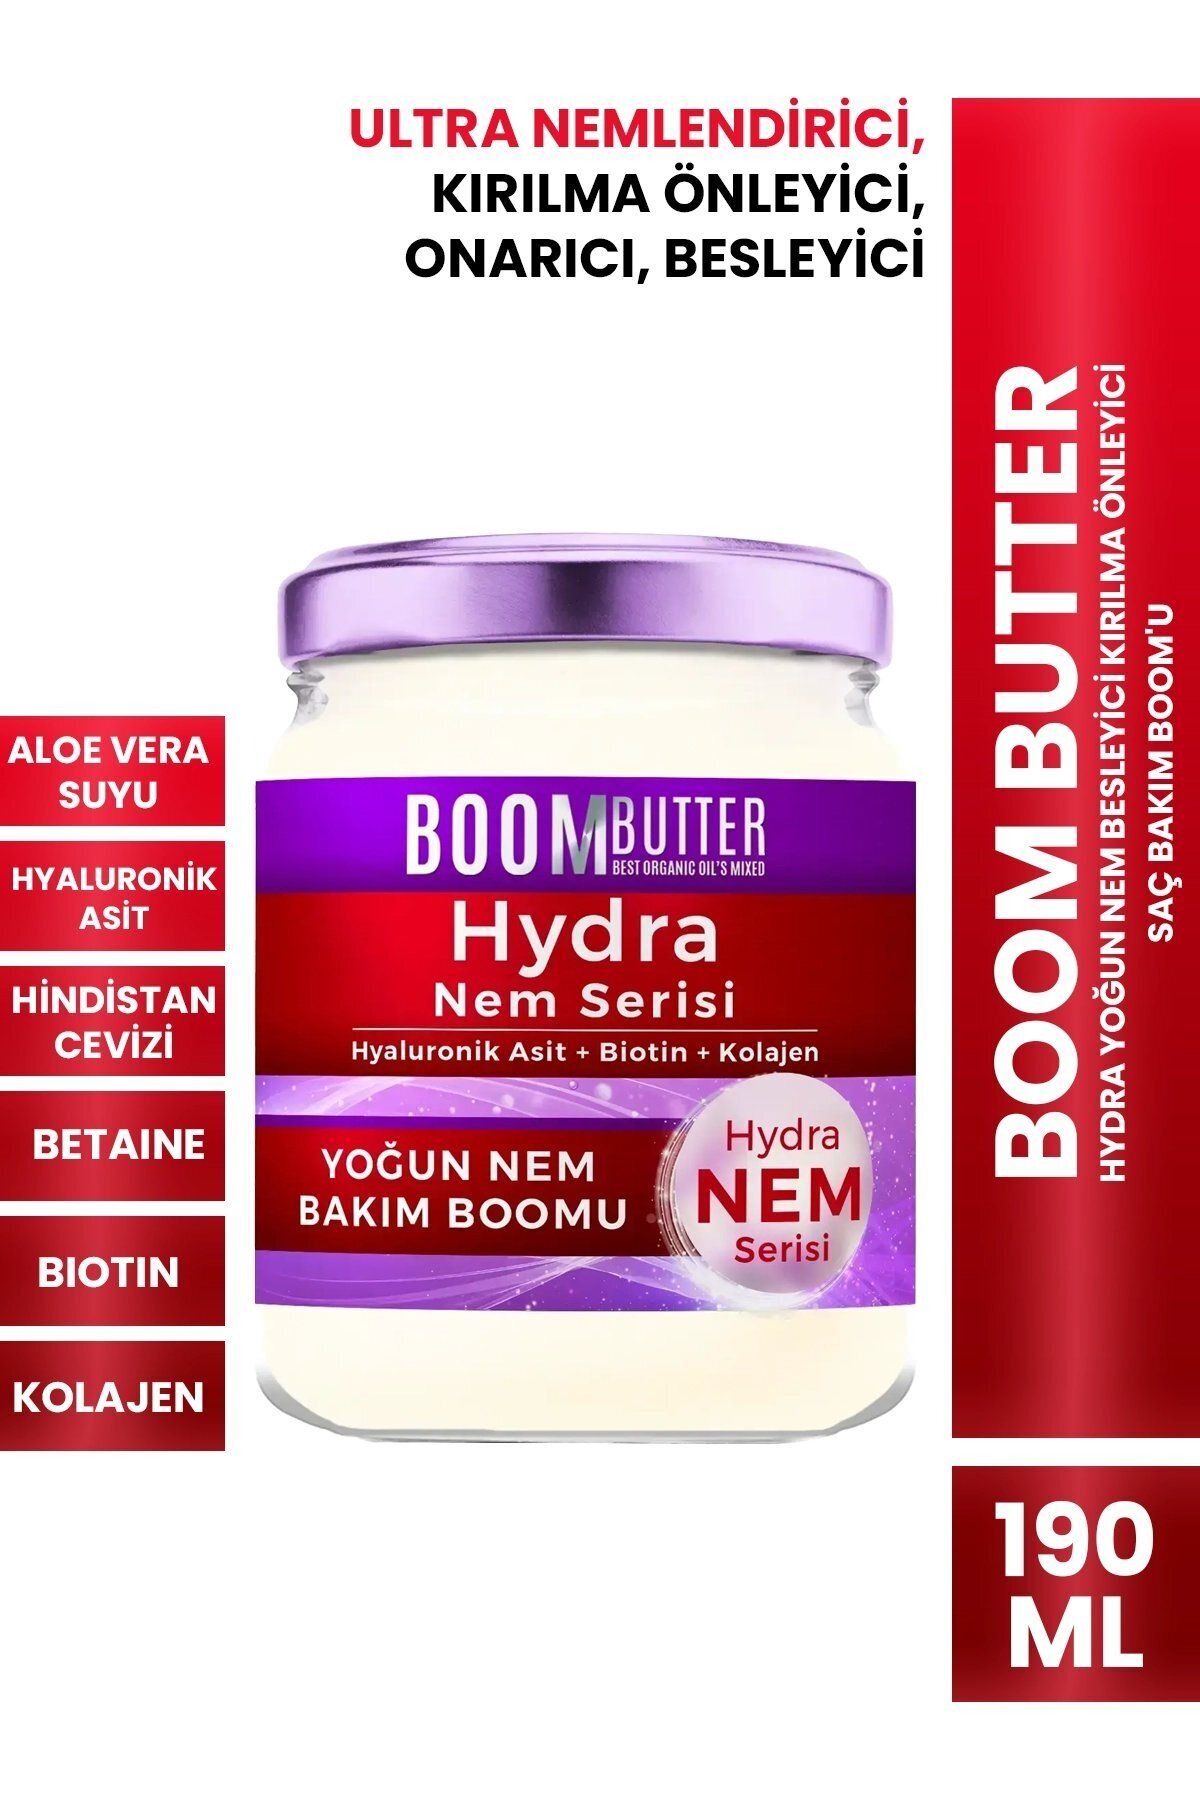 BOOM BUTTER Hydra Yoğun Nem Besleyici Kırılma Önleyici Saç Bakım Boom'u 190 ml